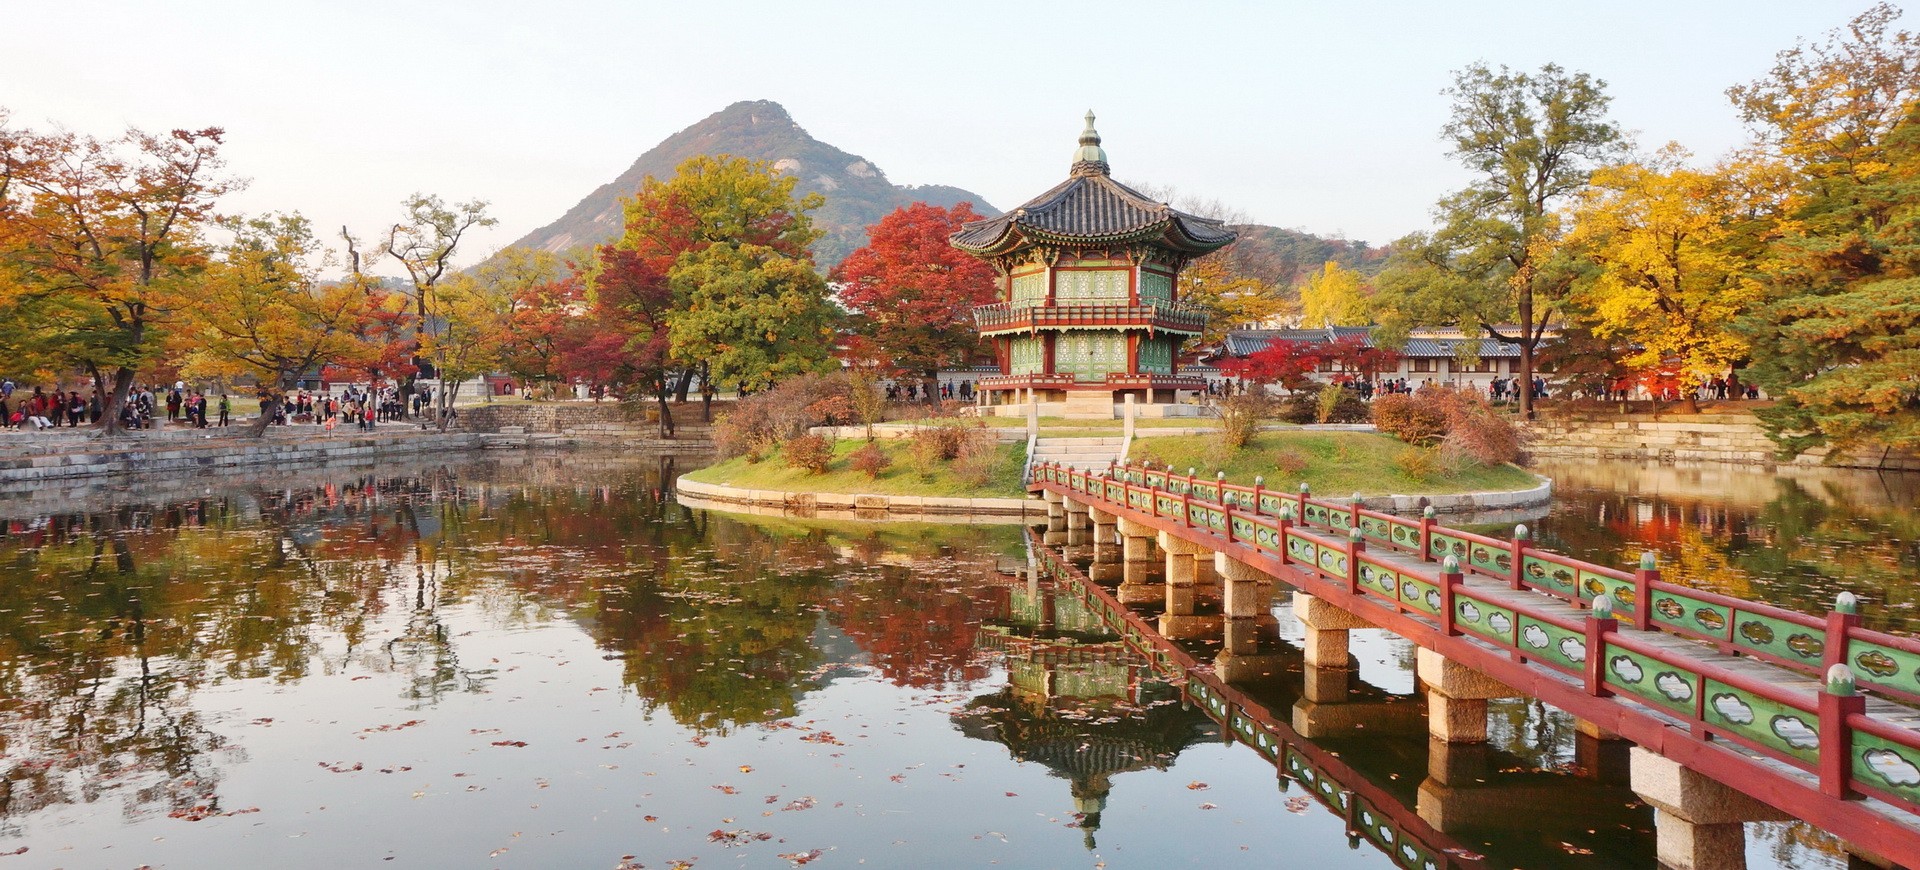 Pavillion Hyangwon Jeong dans la Gyeongbokgung Palace à Séoul en Corée du Sud